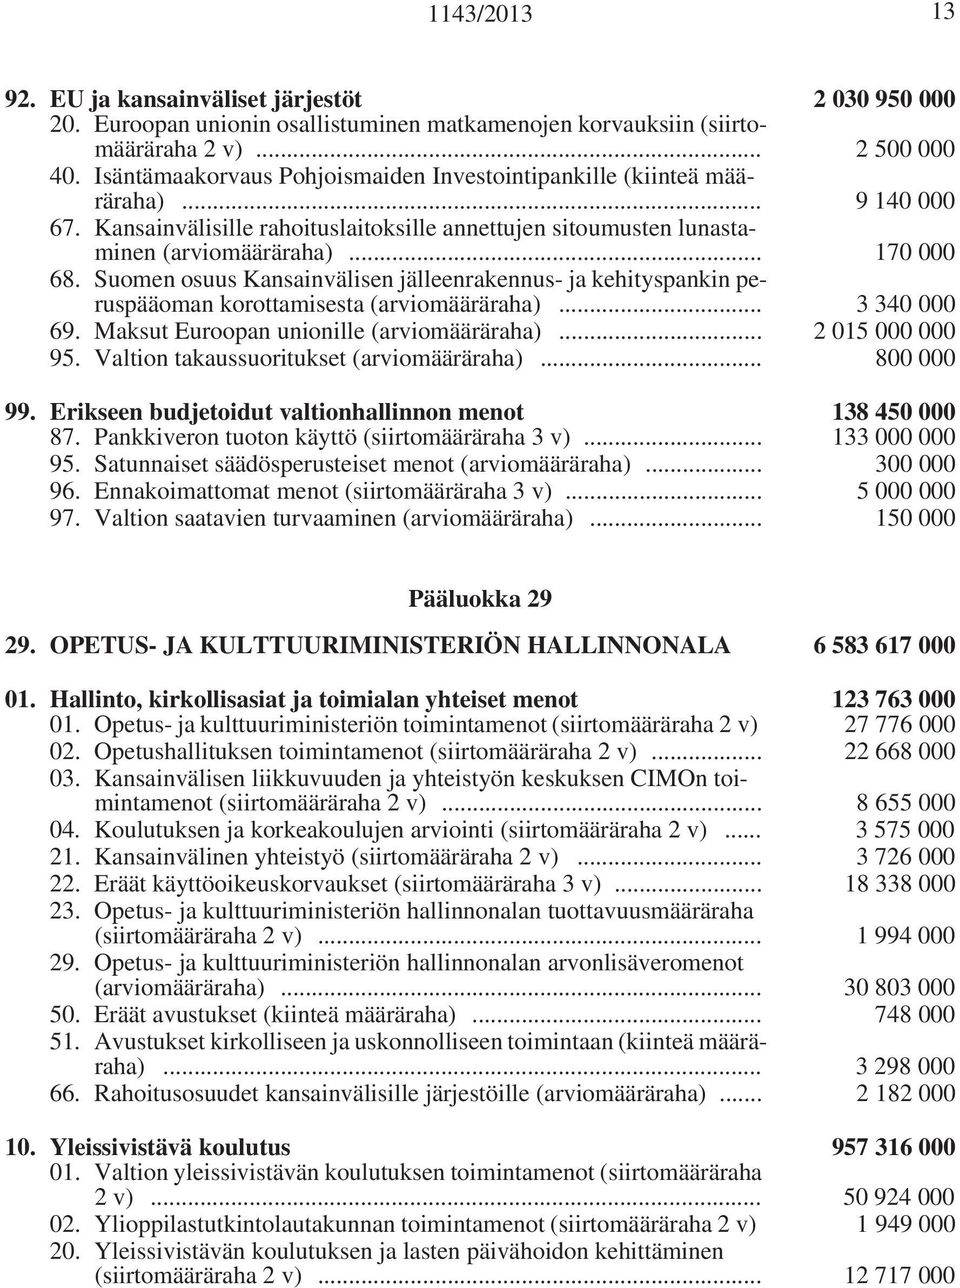 Suomen osuus Kansainvälisen jälleenrakennus- ja kehityspankin peruspääoman korottamisesta (arviomääräraha)... 3 340 000 69. Maksut Euroopan unionille (arviomääräraha)... 2 015 000 000 95.